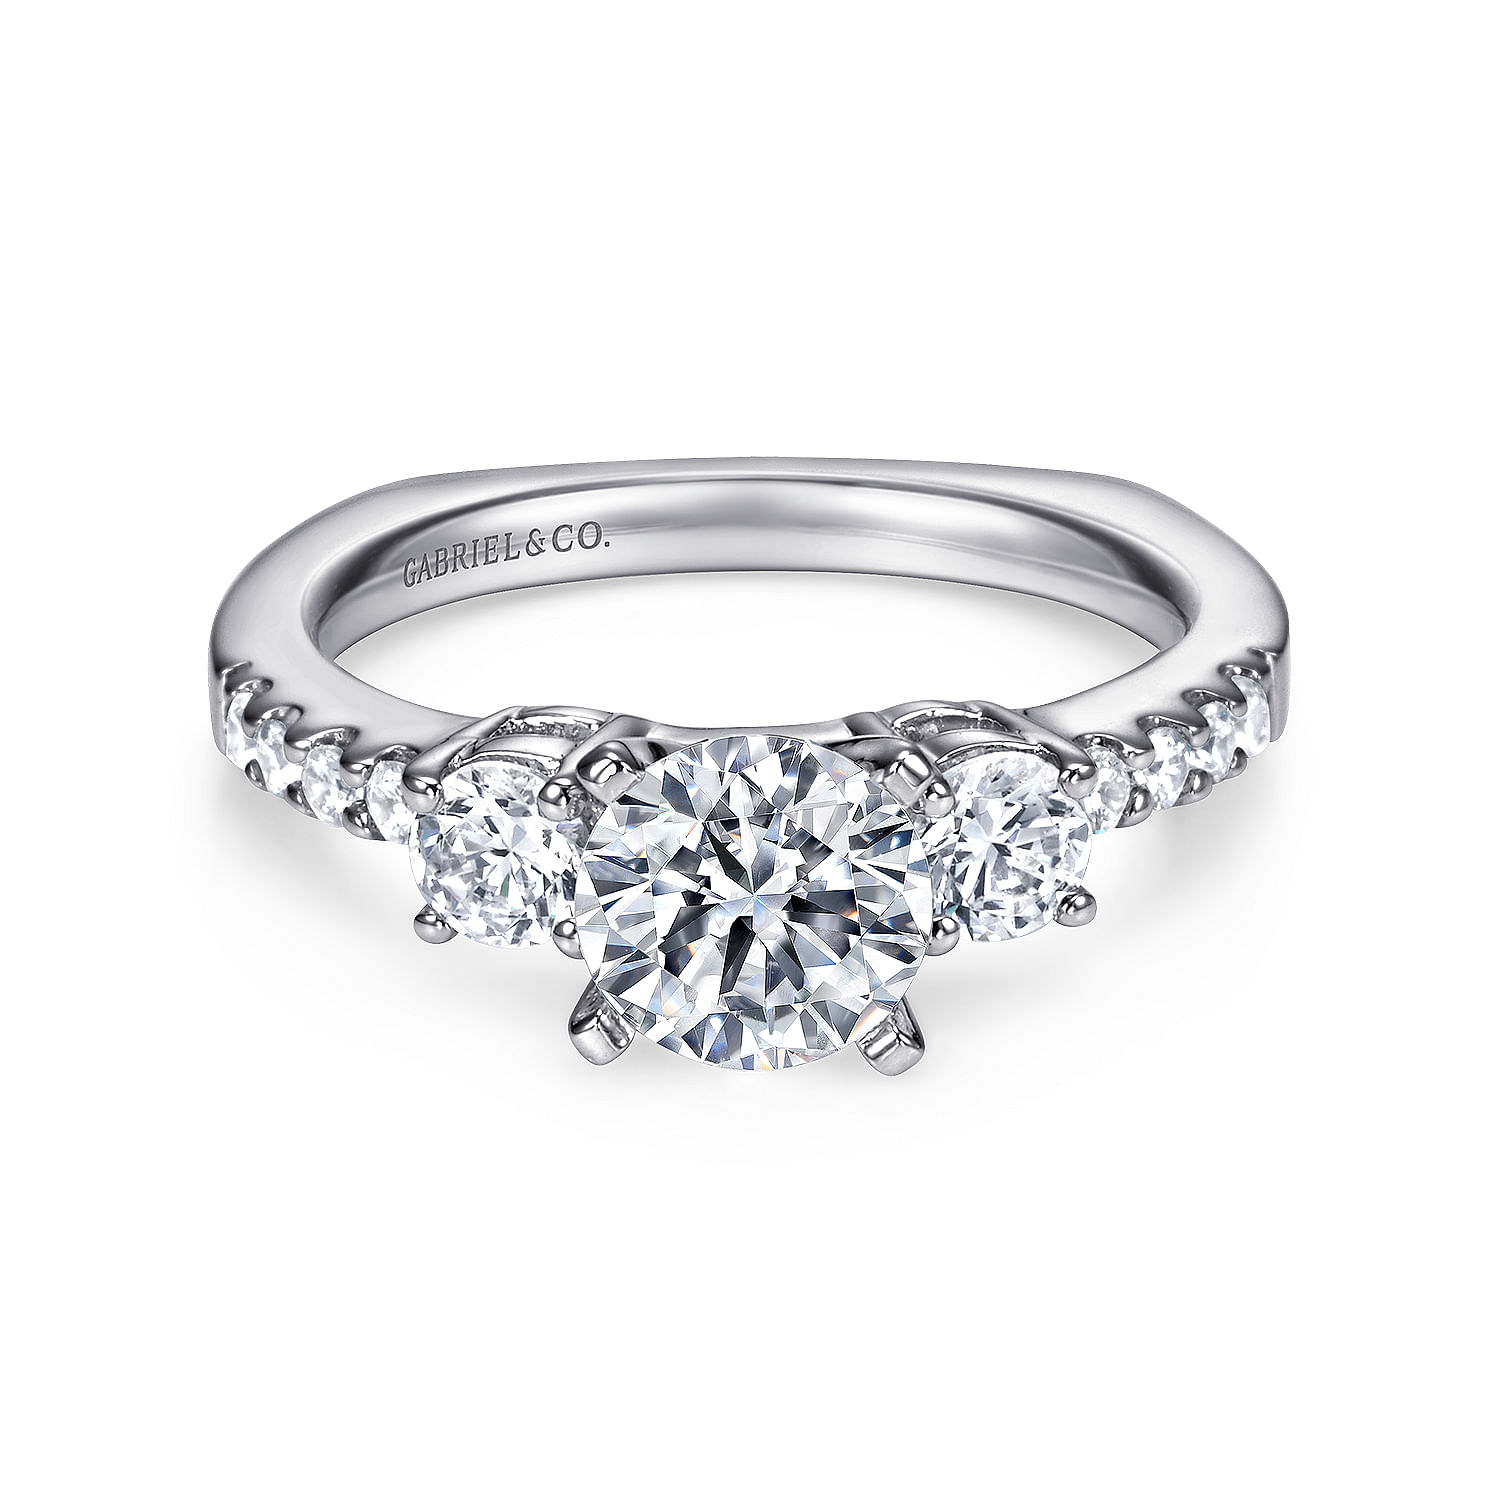 Chloe - 14K White Gold Round Three Stone Diamond Engagement Ring